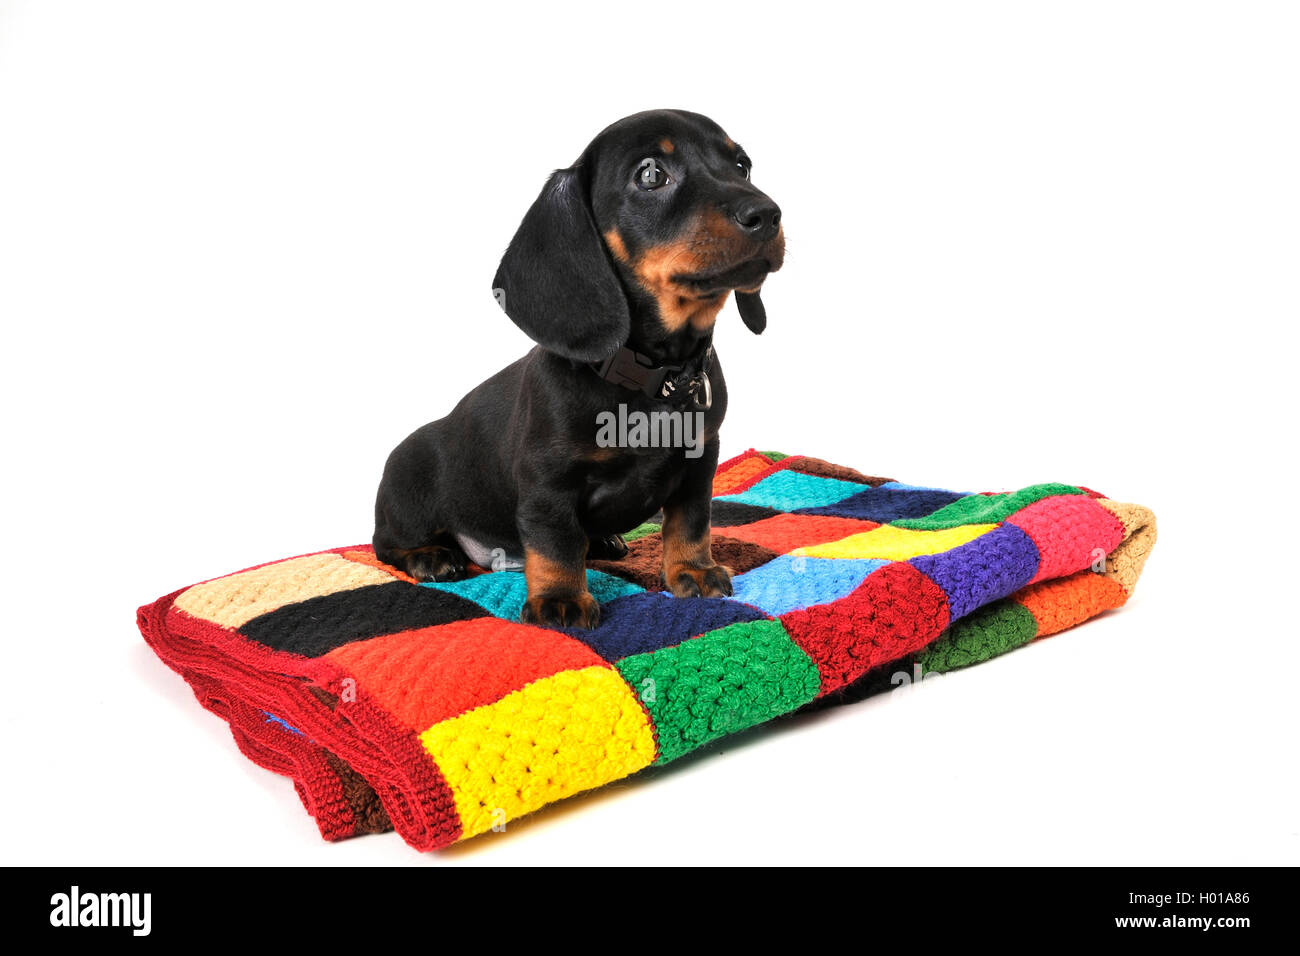 Kurzhaarige Dackel, Kurzhaarige wurst Hund, Haushund (Canis lupus f. familiaris), dunkelhaarige Welpe, sitzend auf einem farbigen Wolldecke, Cut-out Stockfoto